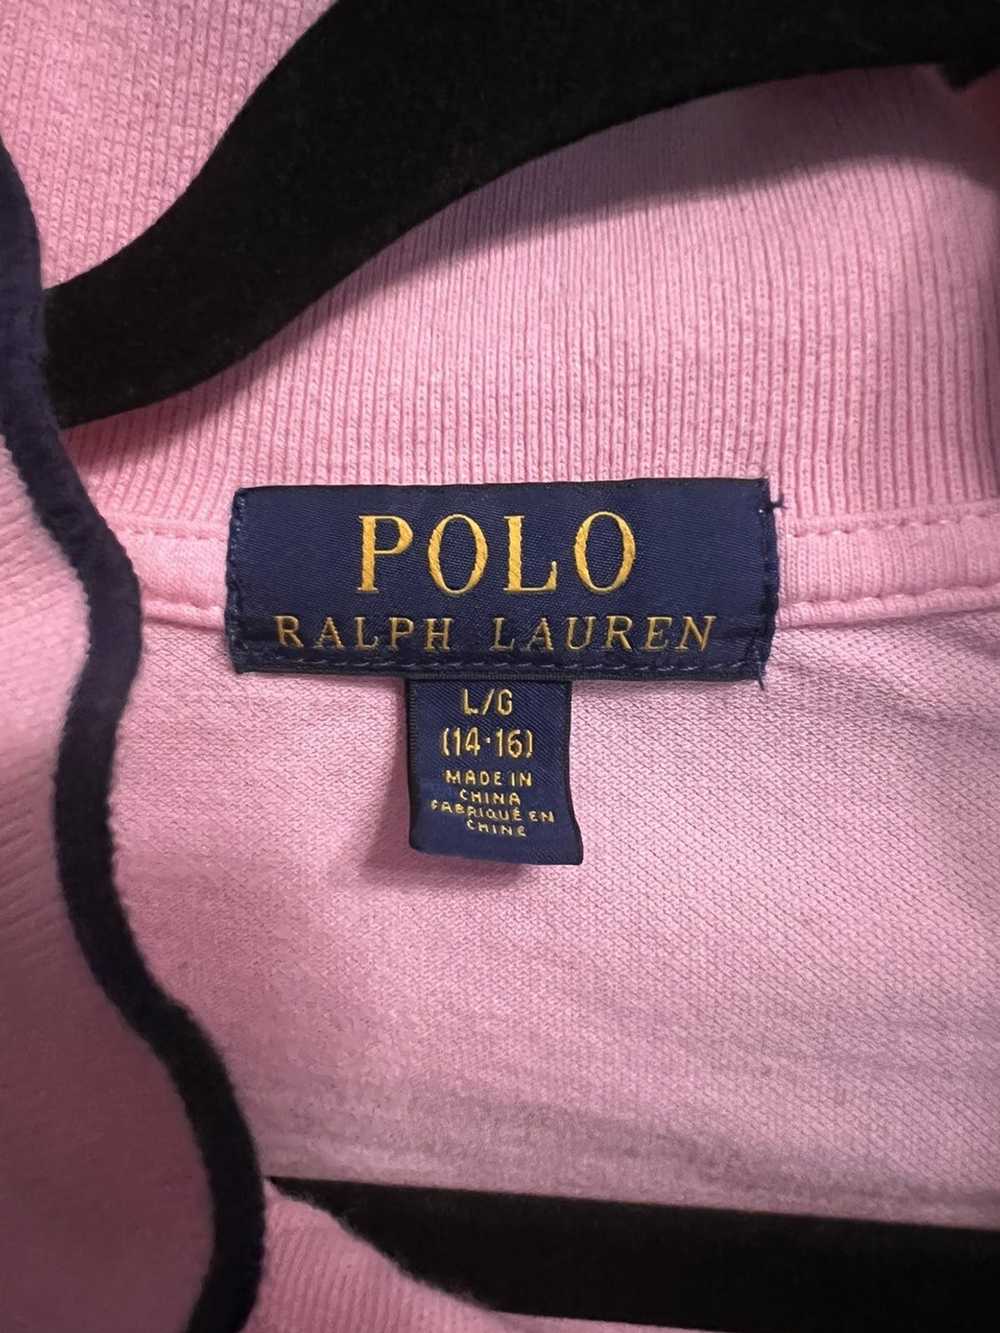 Polo Ralph Lauren Polo Ralph Lauren Collaredshirt - image 3